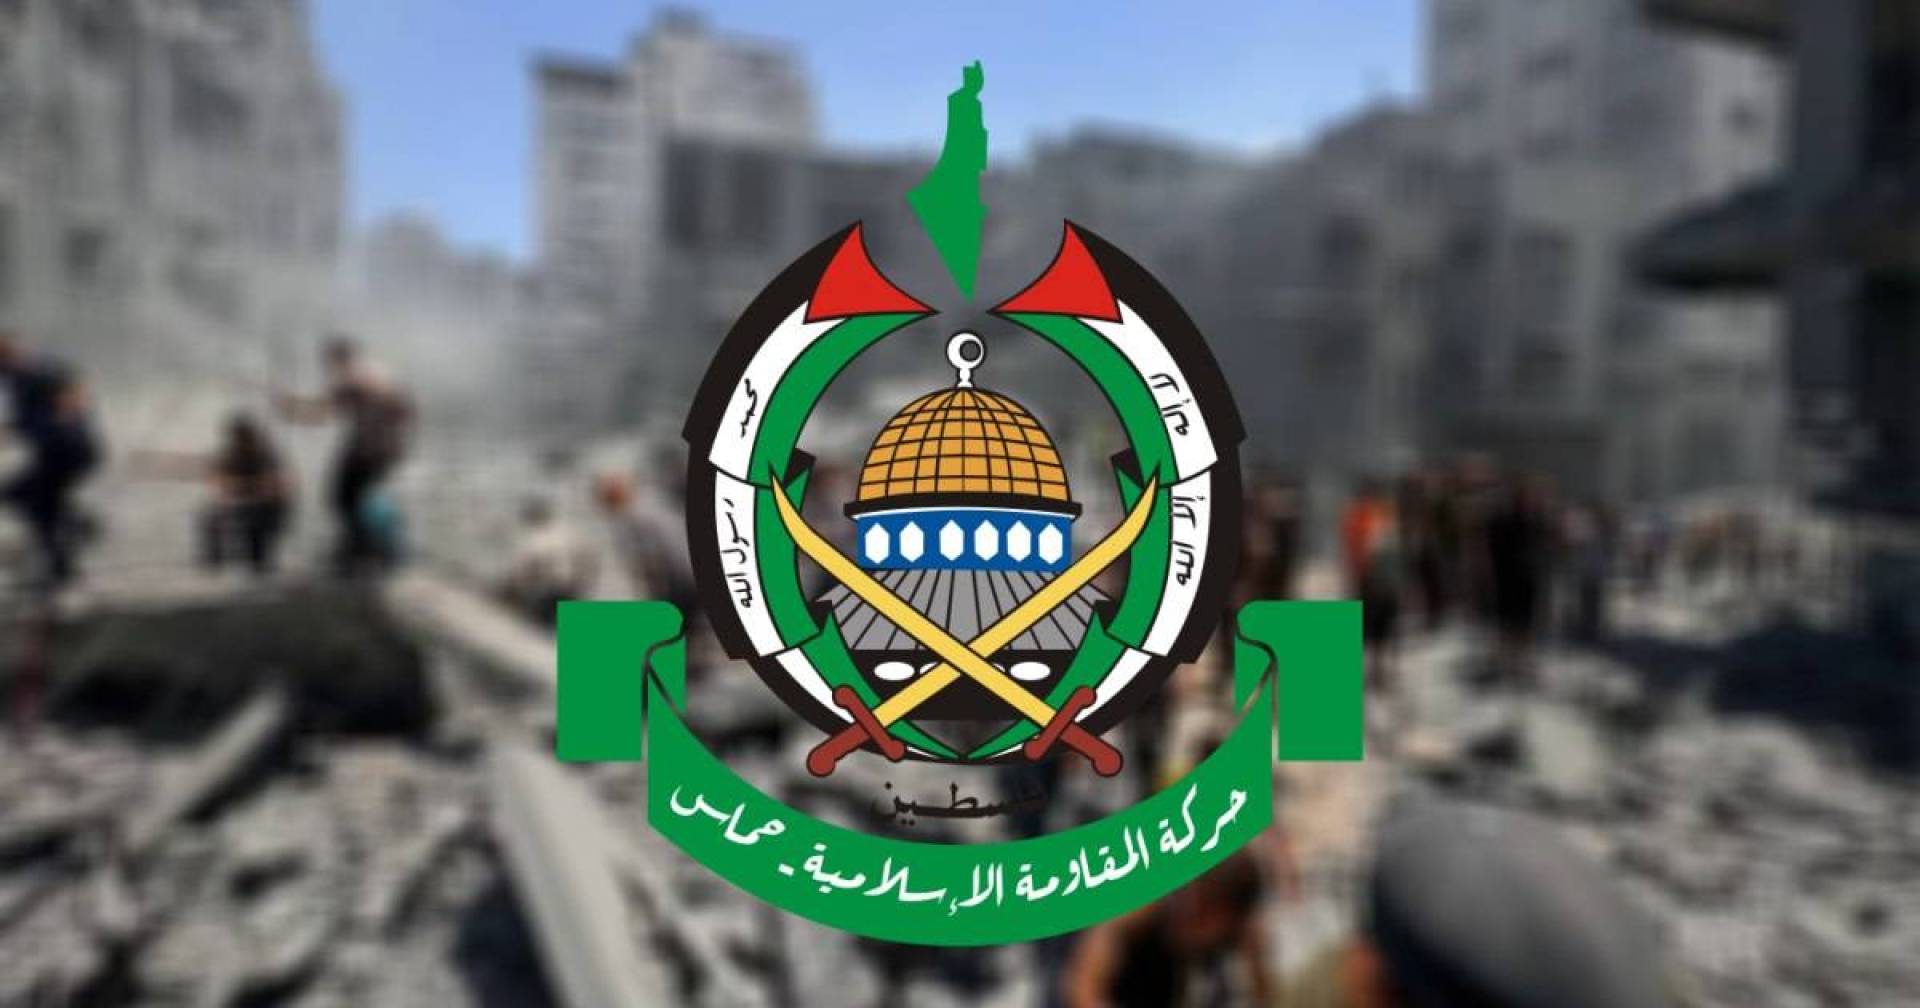 حماس تعلق على مخرجات اجتماع روما والمقترح الإسرائيلي الجديد